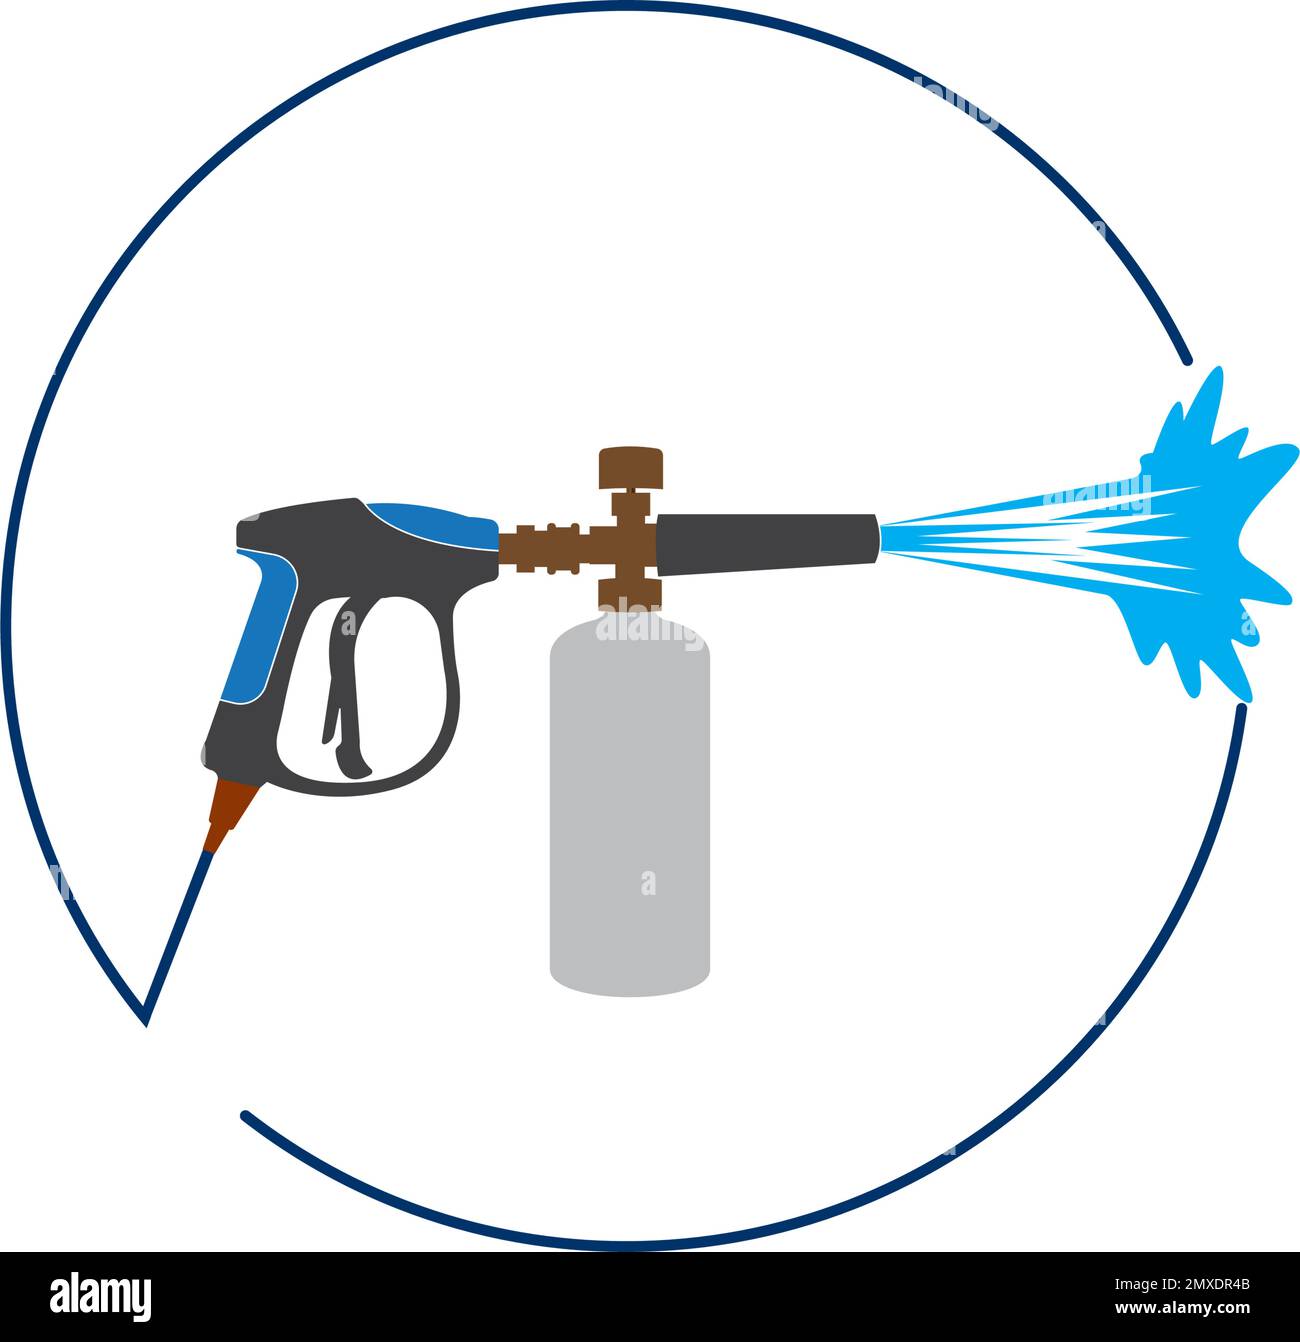 pressure washing gun logo